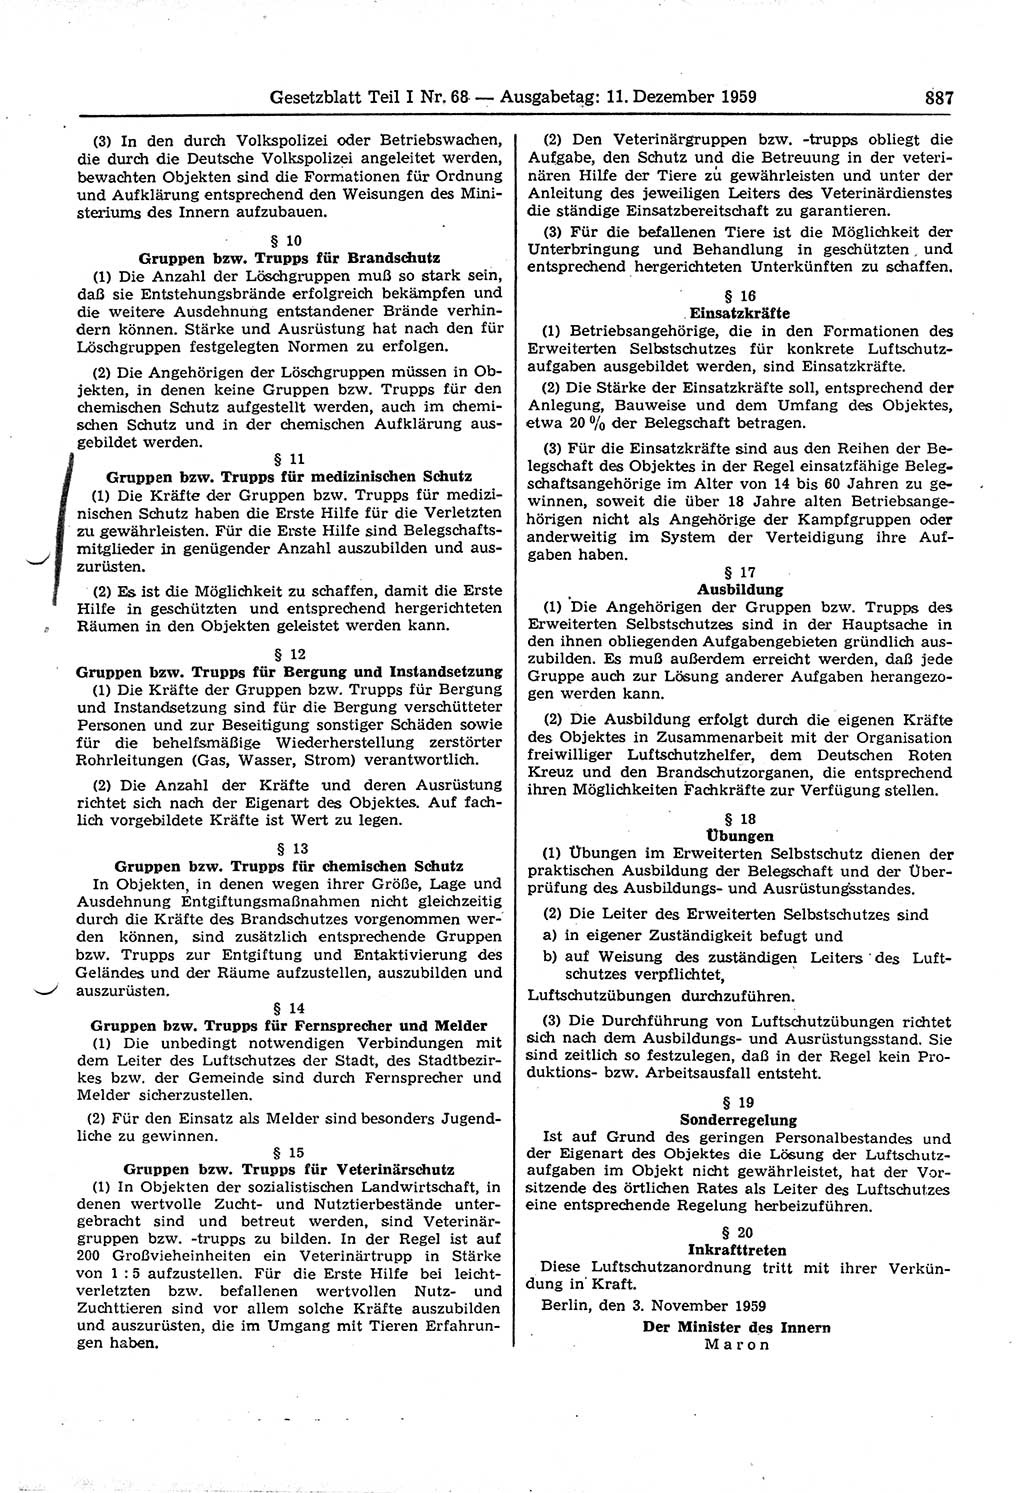 Gesetzblatt (GBl.) der Deutschen Demokratischen Republik (DDR) Teil Ⅰ 1959, Seite 887 (GBl. DDR Ⅰ 1959, S. 887)